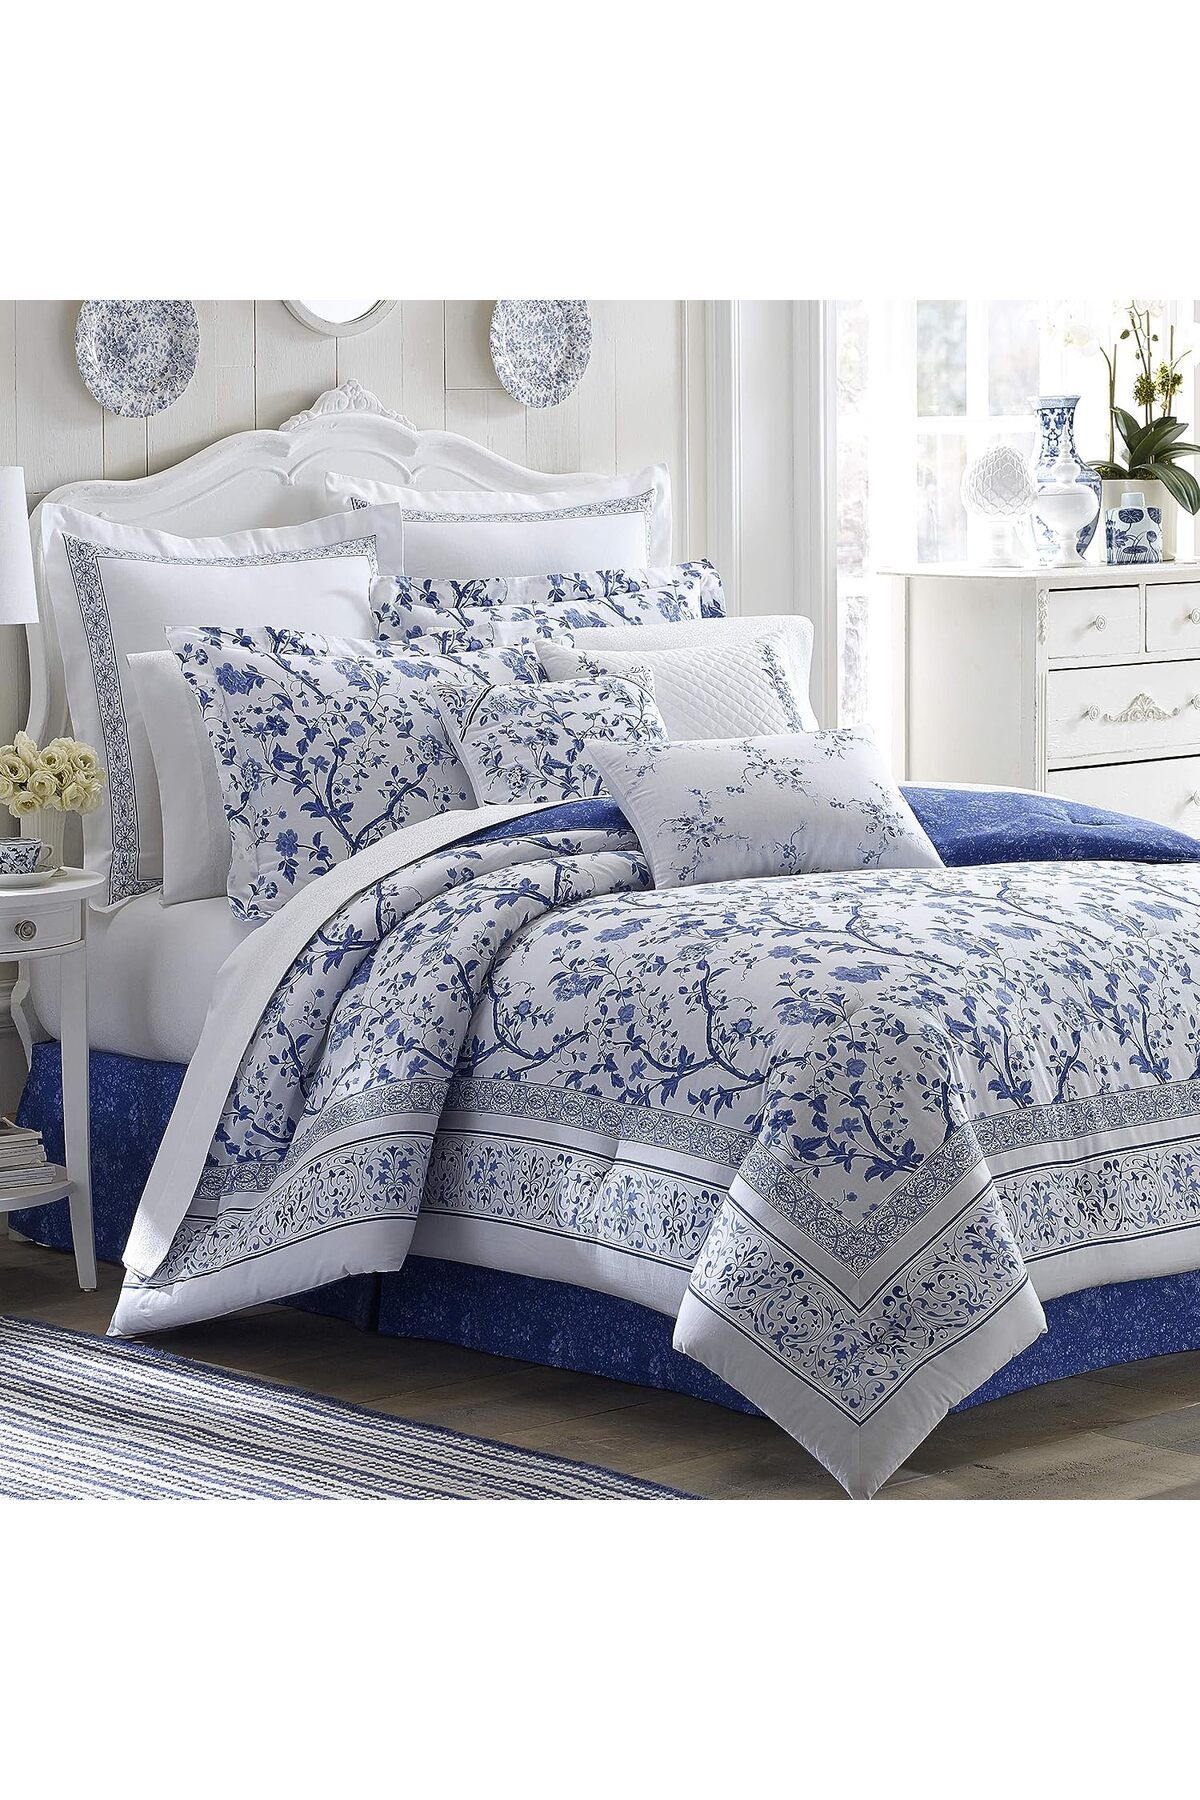 Laura Ashley Charlotte Queen Premium Collection Çin Mavisi Yatak Örtüsü Lüks ve Rahat Nevresim Takımı Şık Tasarım